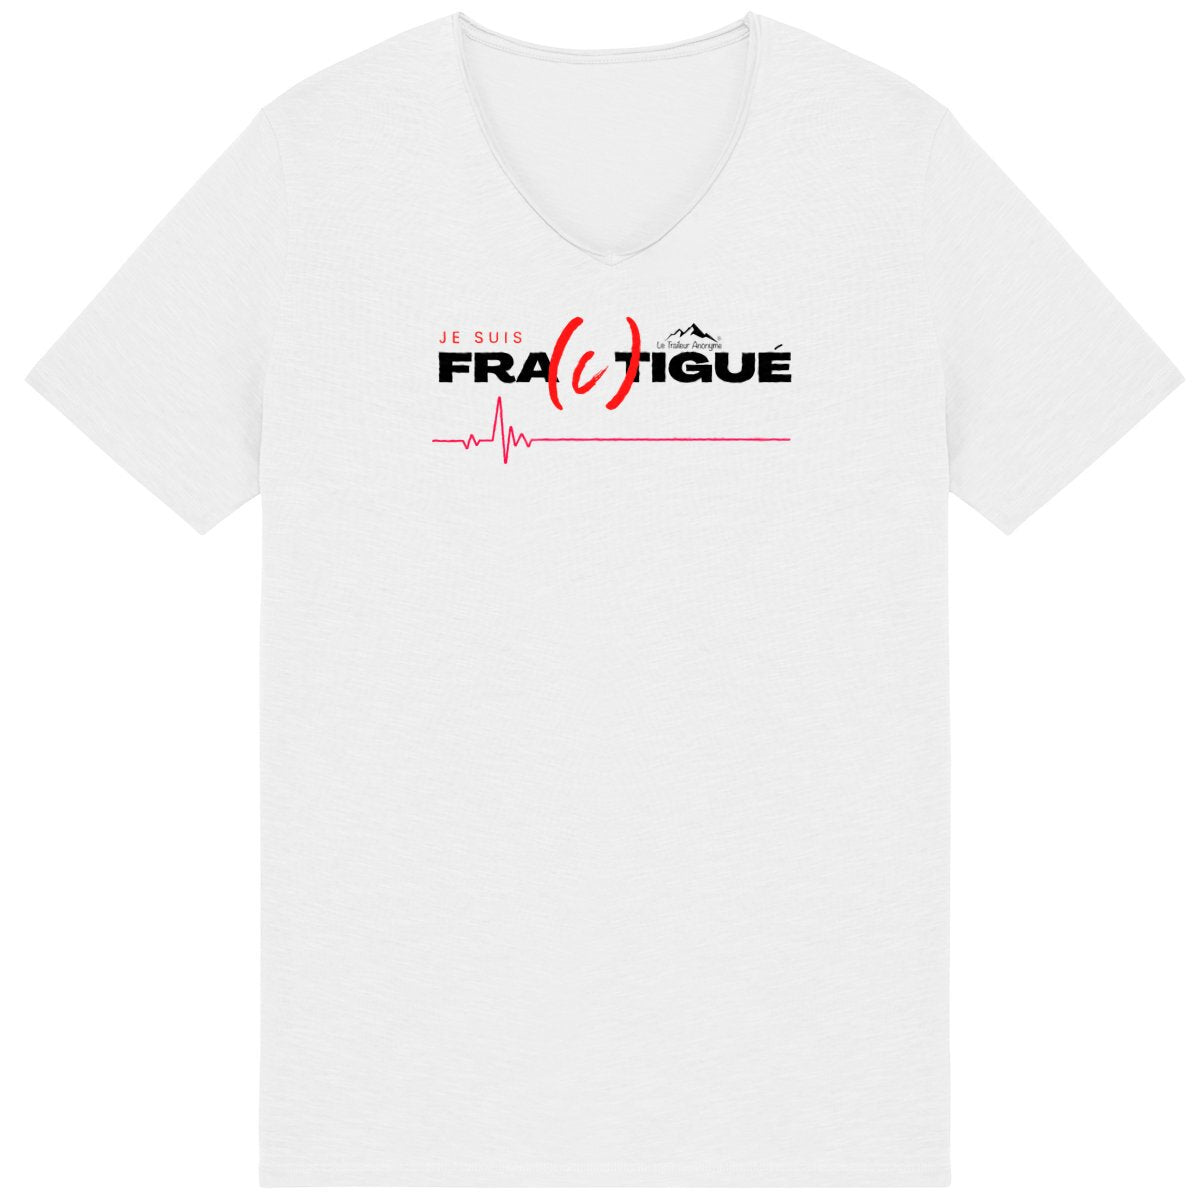 T-shirt Coton Bio Slub Premium - Homme - Collection "Fractigué" - Le Traileur Anonyme